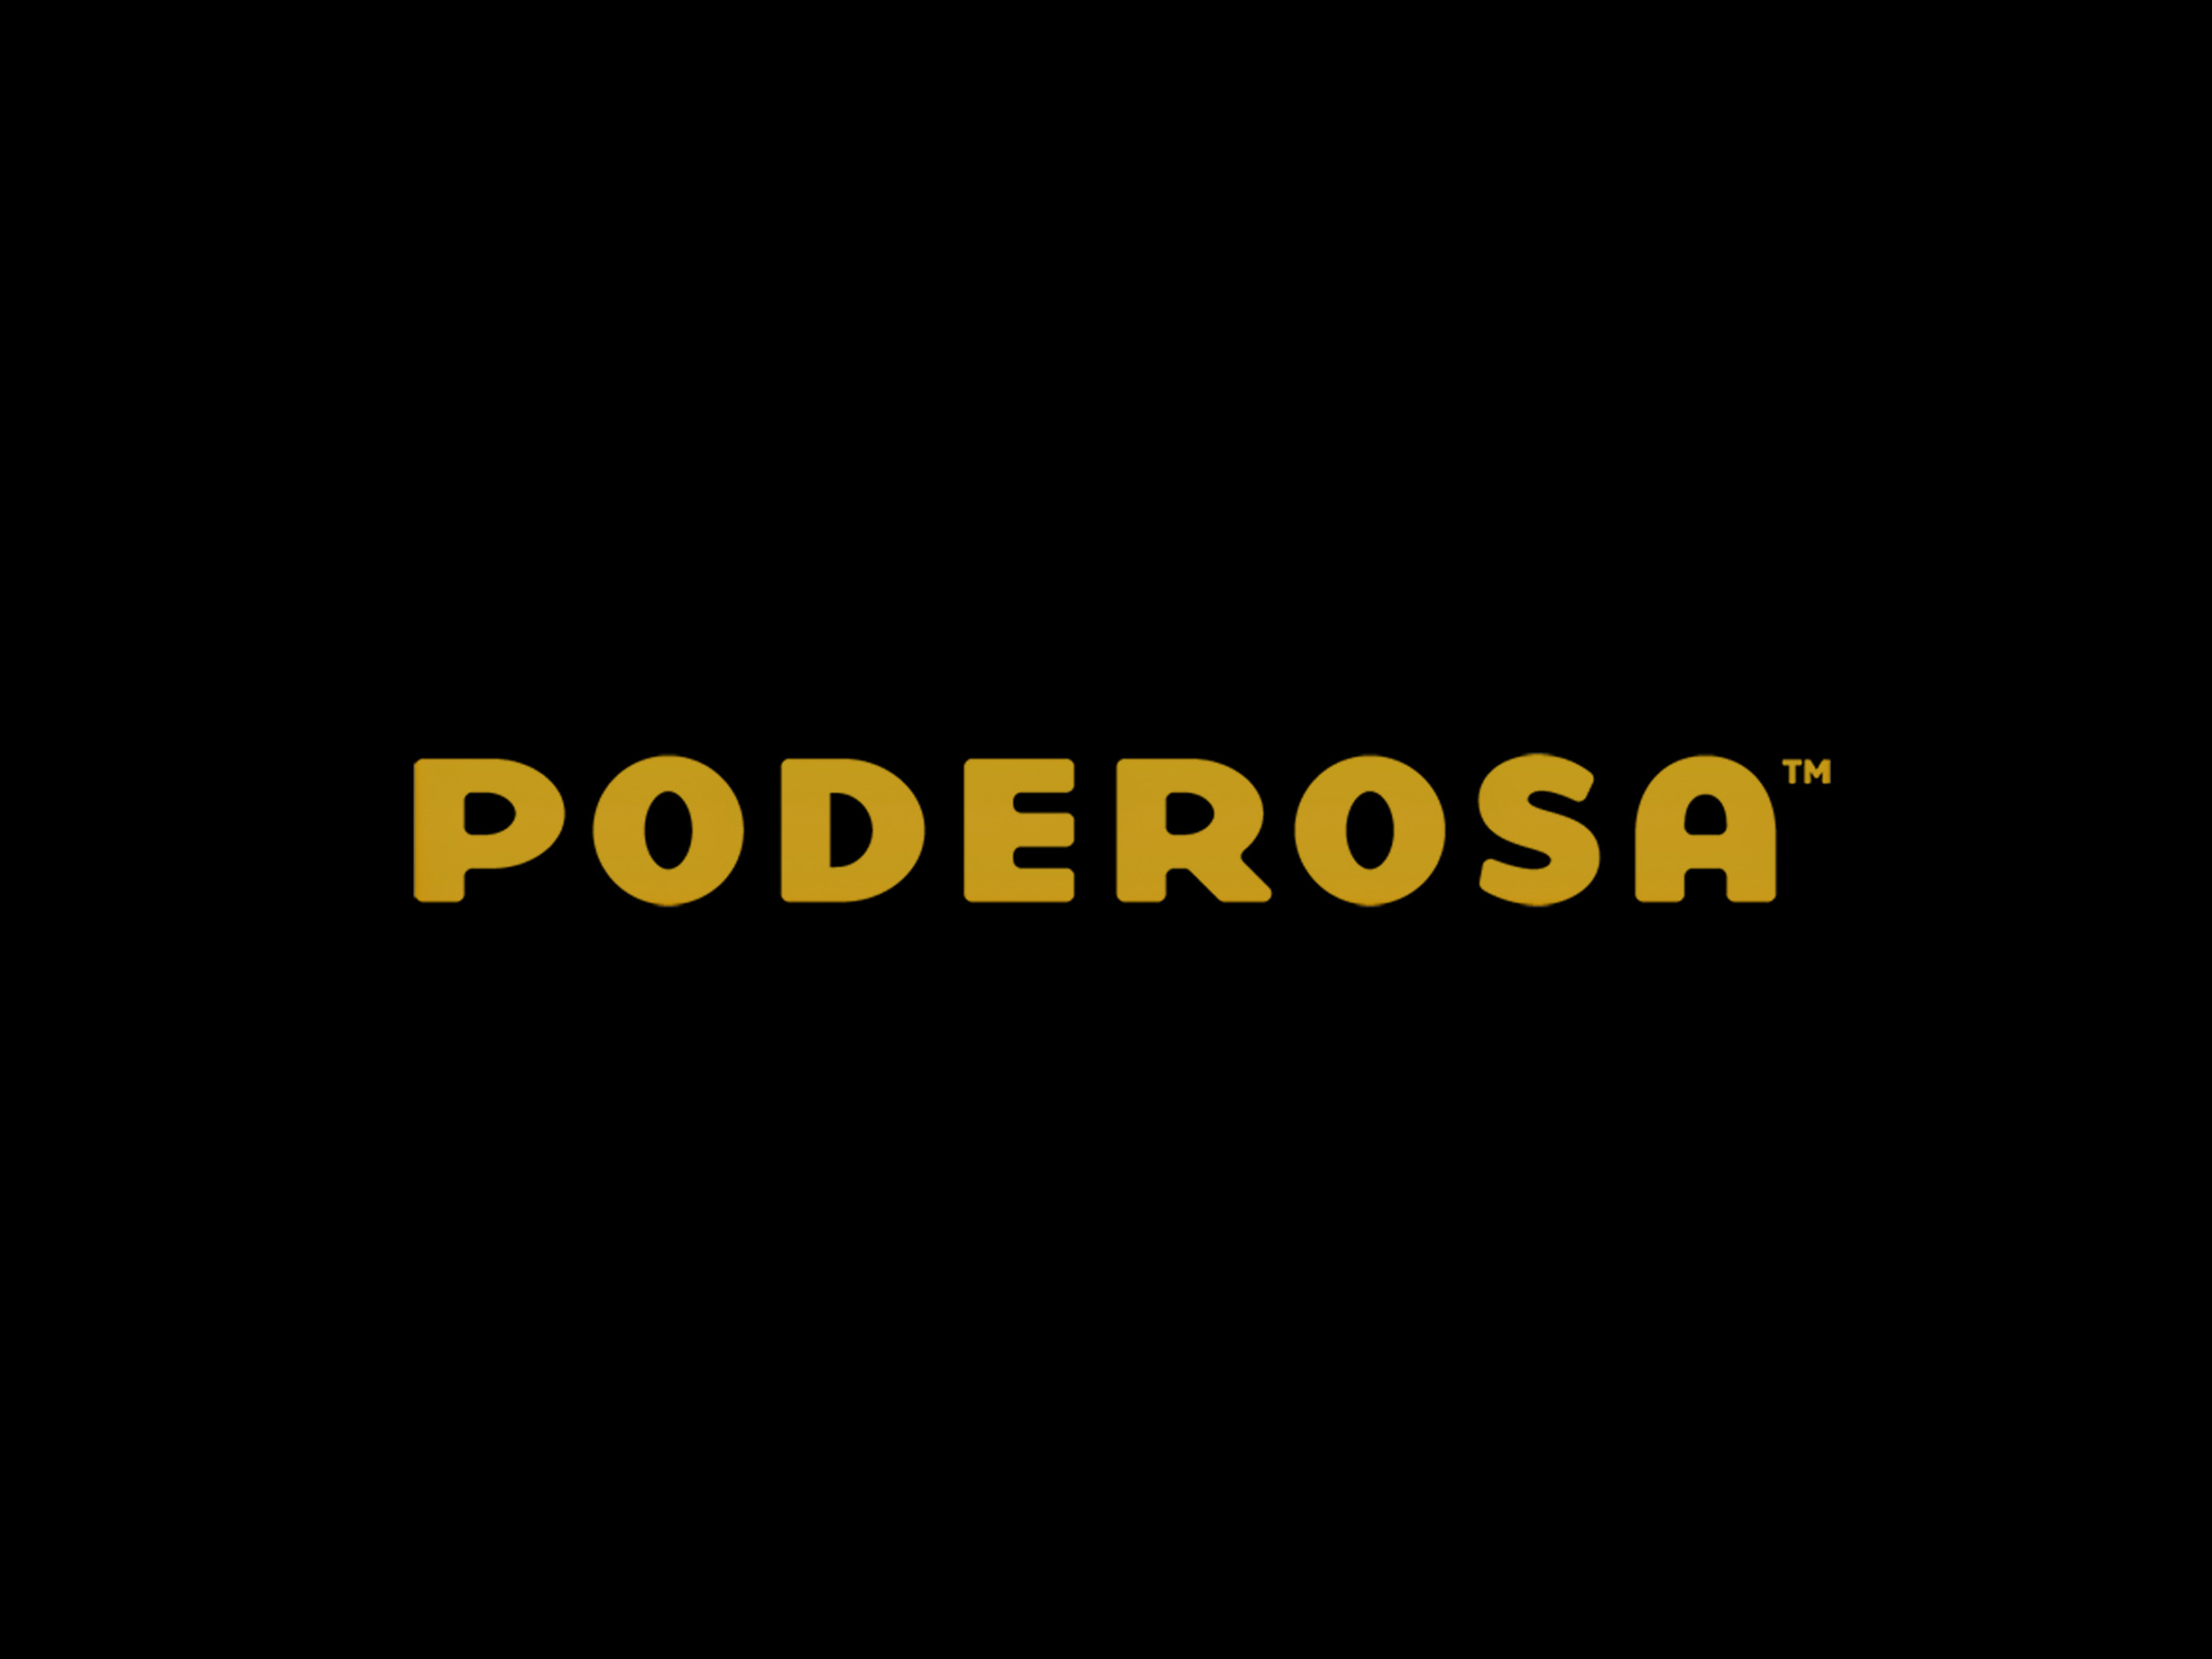 Project Poderosa Logo designed by Heavy Heavy